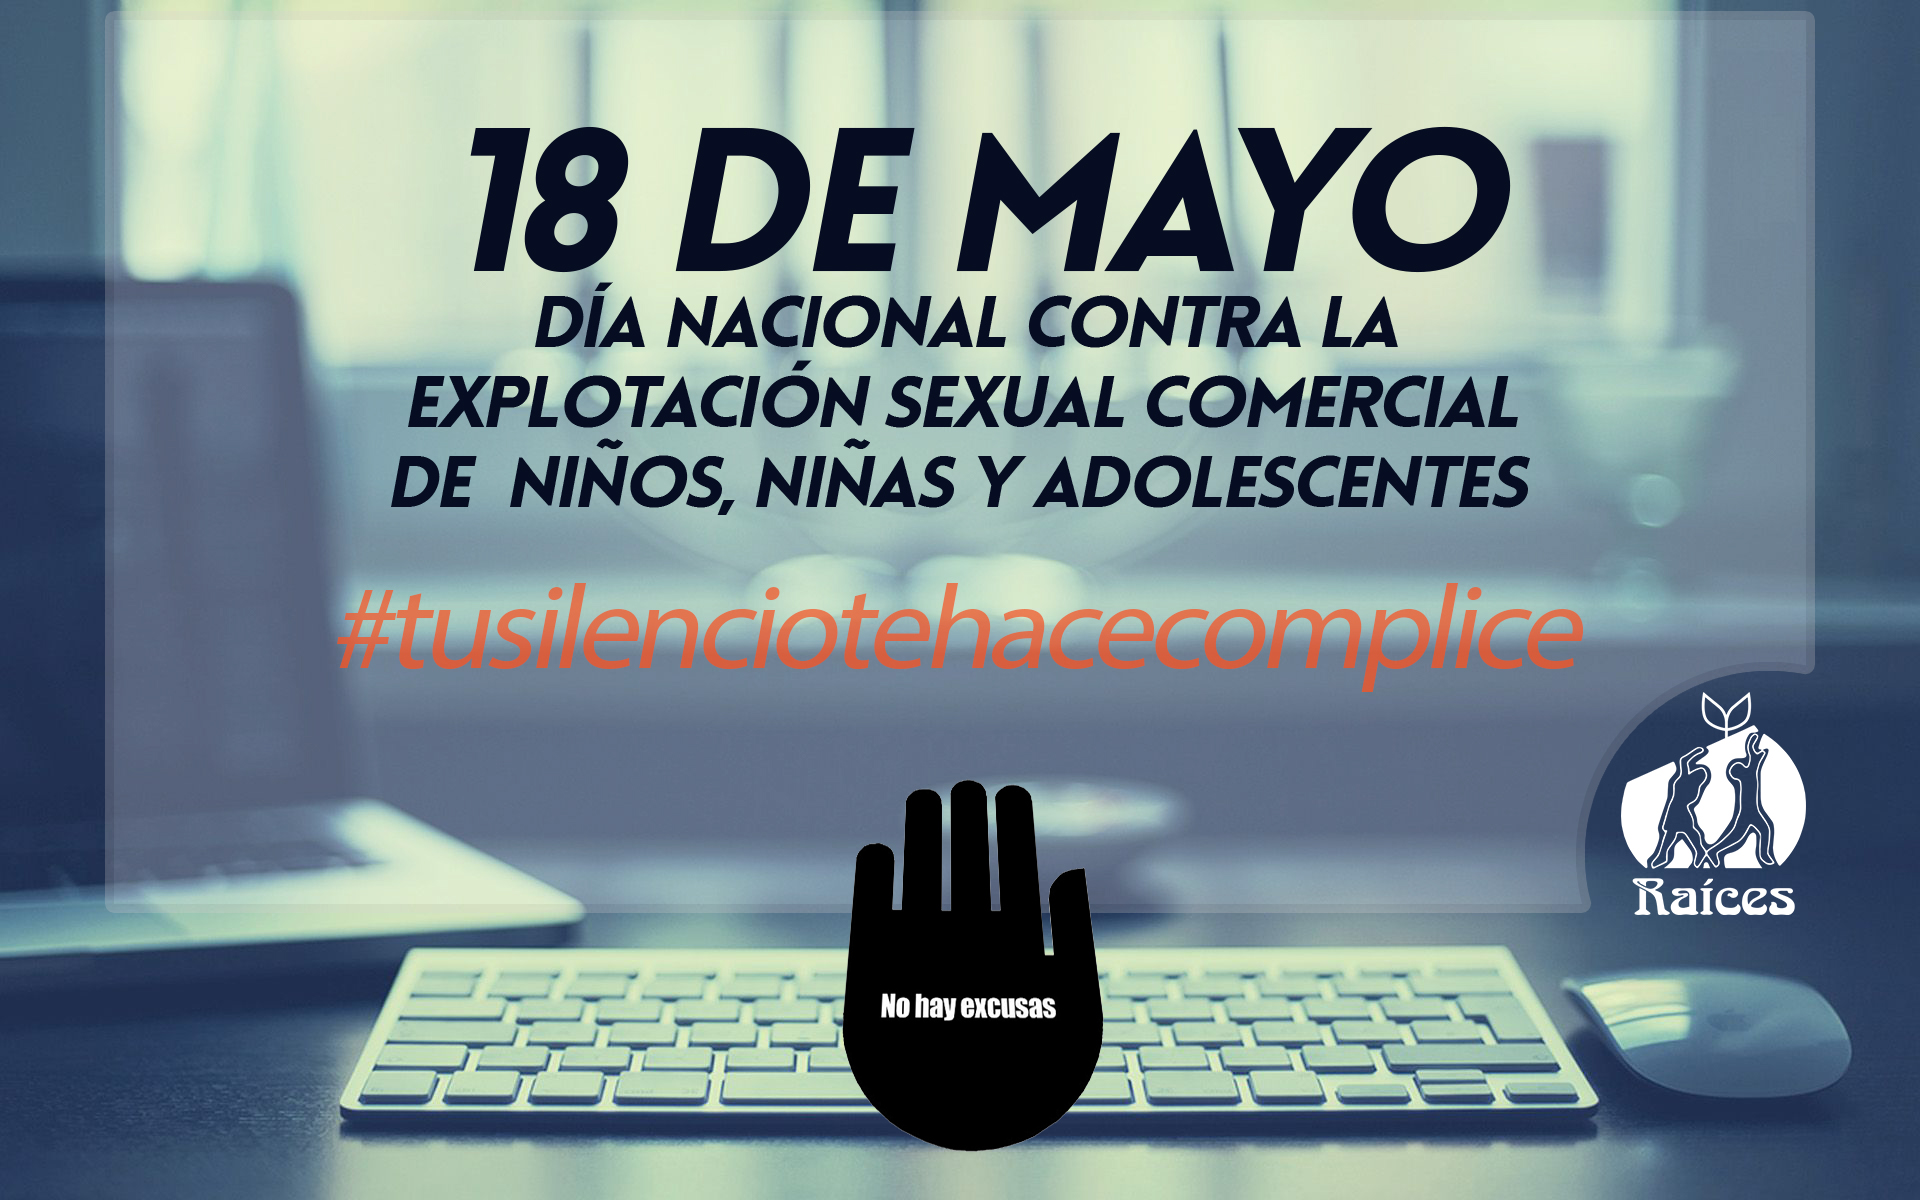 18 de mayo, Día Nacional contra la explotación sexual comercial contra niños, niñas y adolescentes